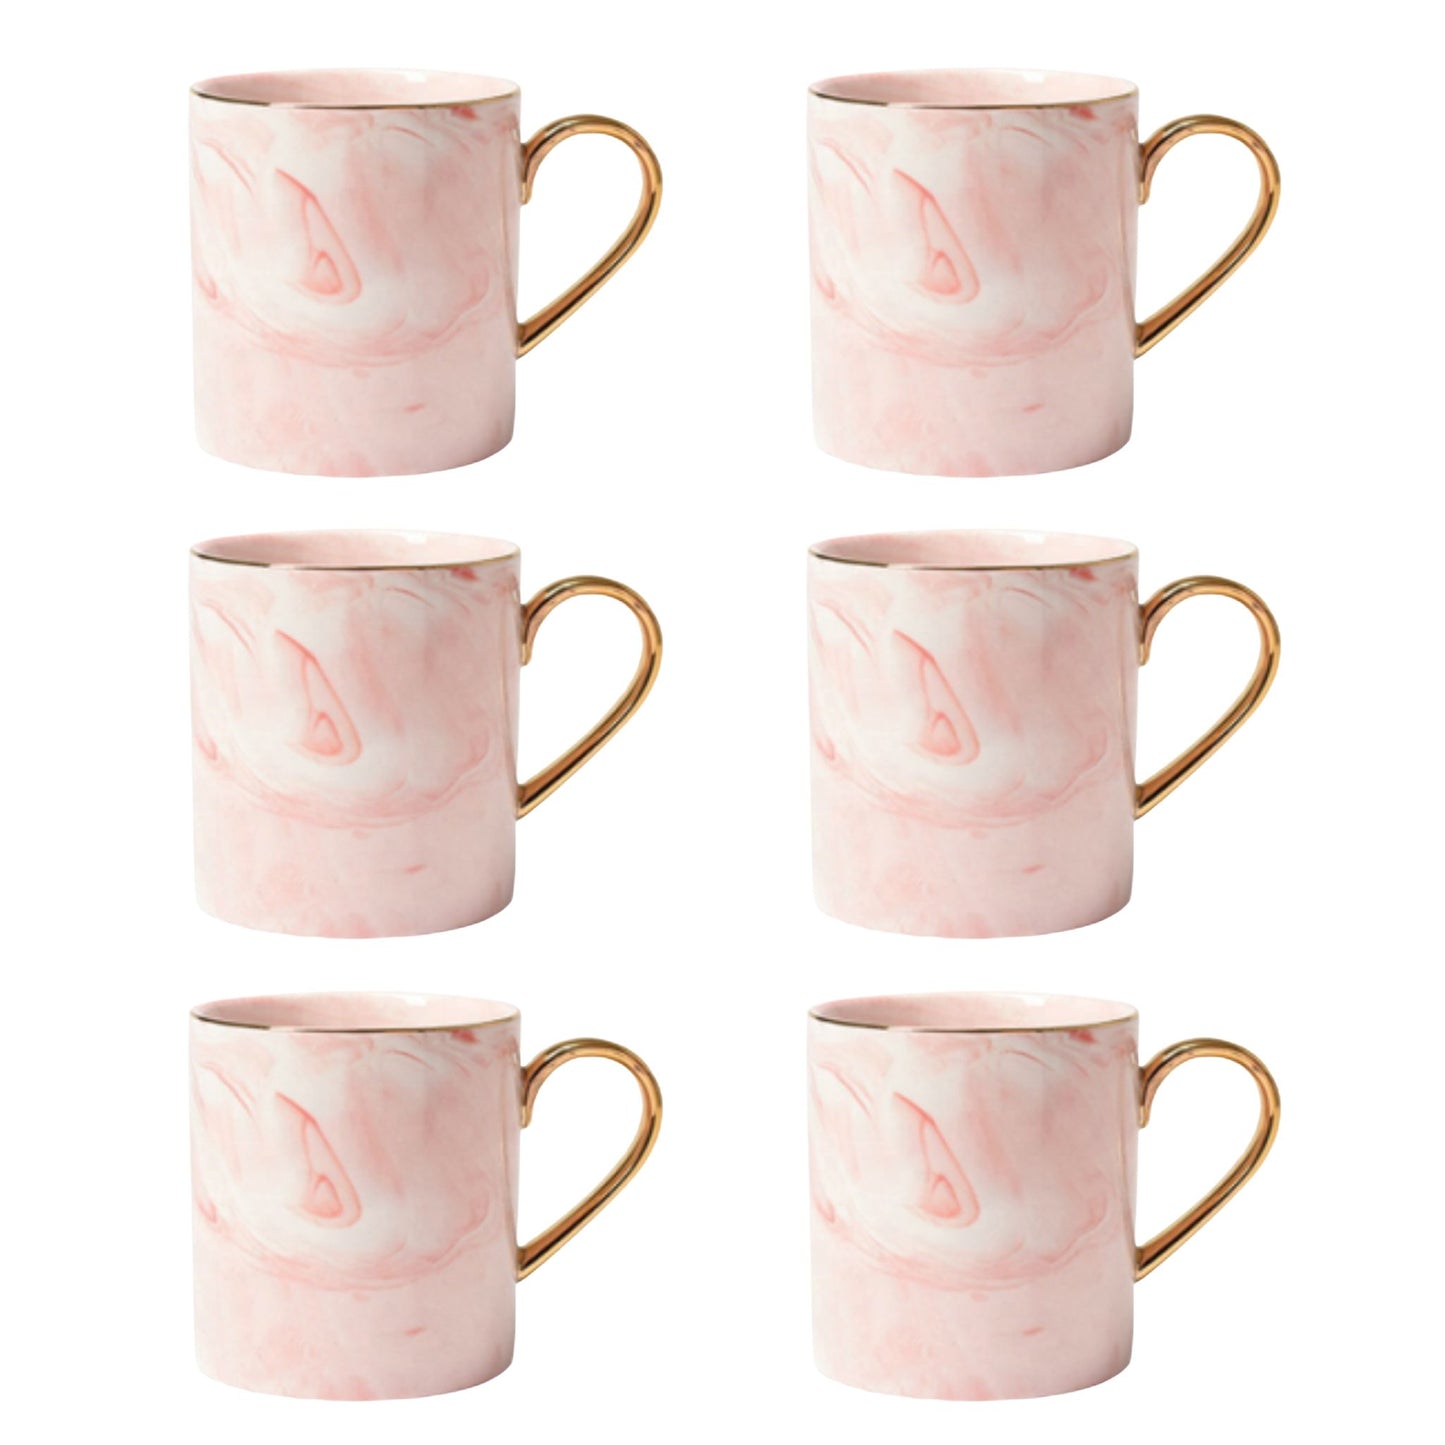 Rosa Marmor Tasse Goldener Henkel Schöne Tassen zum Verschenken Luxus Tassen Set Schönes Marmor Geschirr Luxus Geschirr mit Gold 6er Set